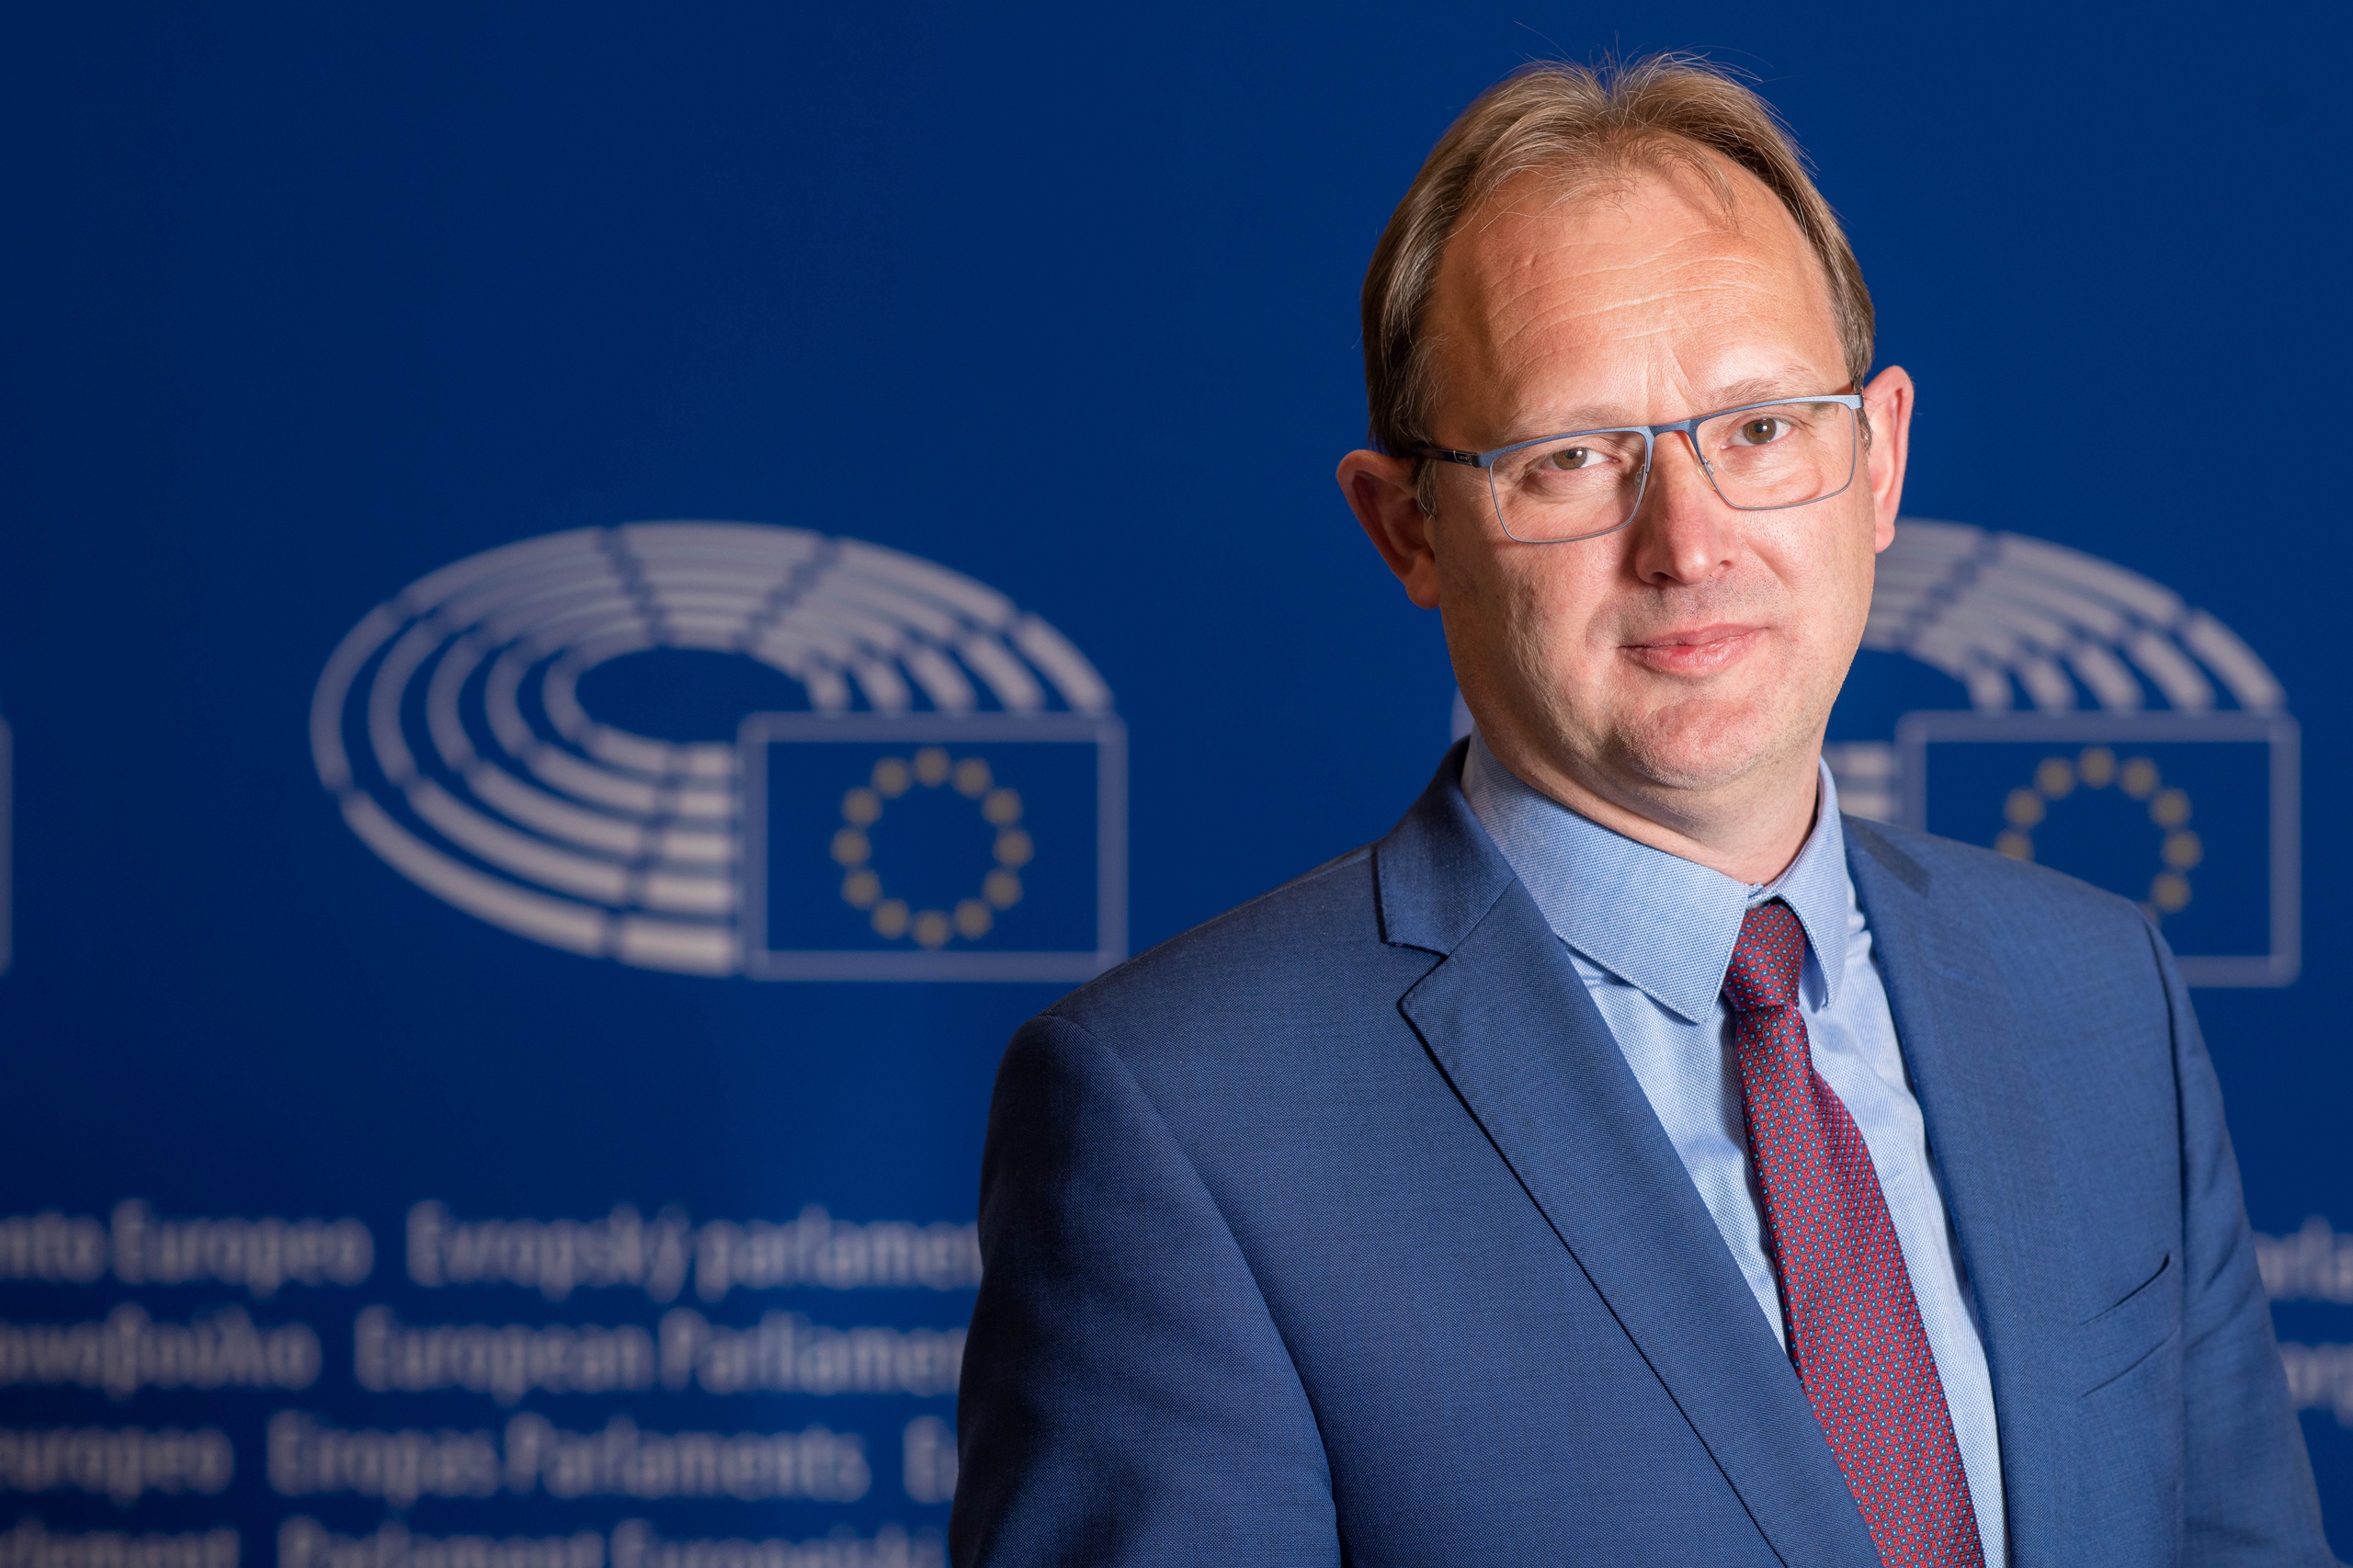 Europarlementariër Bert-Jan Ruissen van de SGP